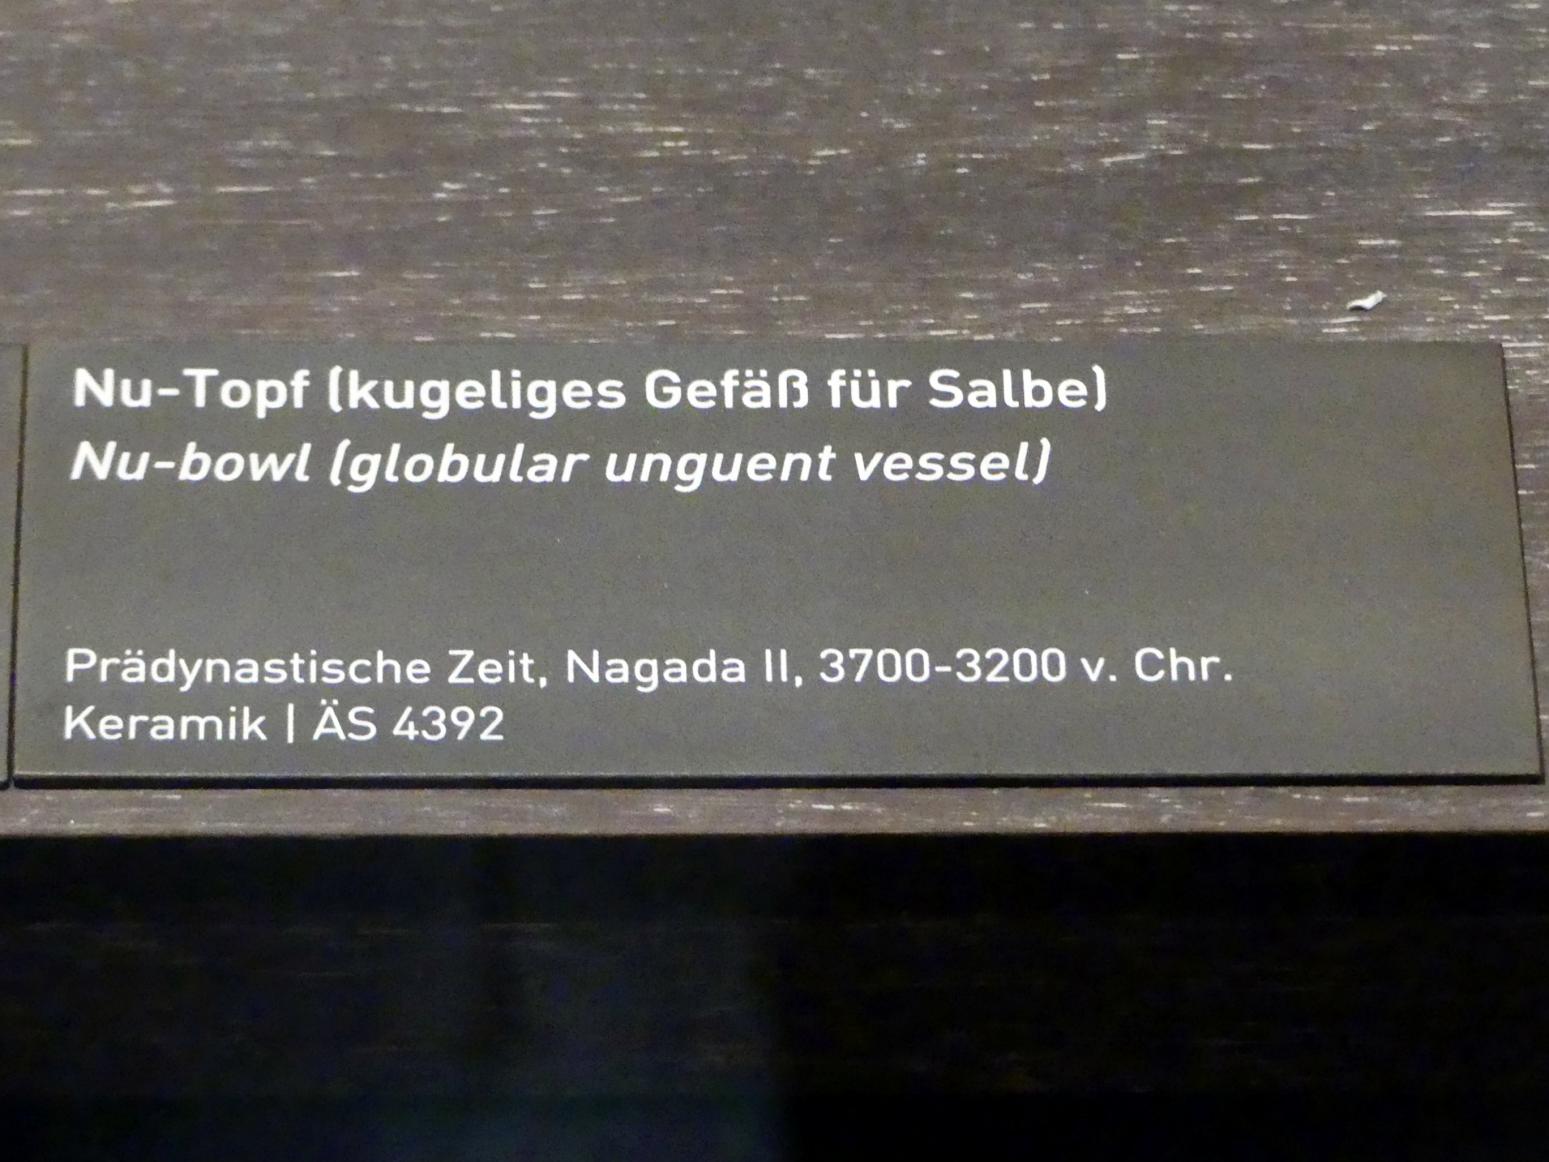 Nu-Topf (kugeliges Gefäß für Salbe), Naqada II, 3700 - 3100 v. Chr., 3700 - 3200 v. Chr., Bild 2/2